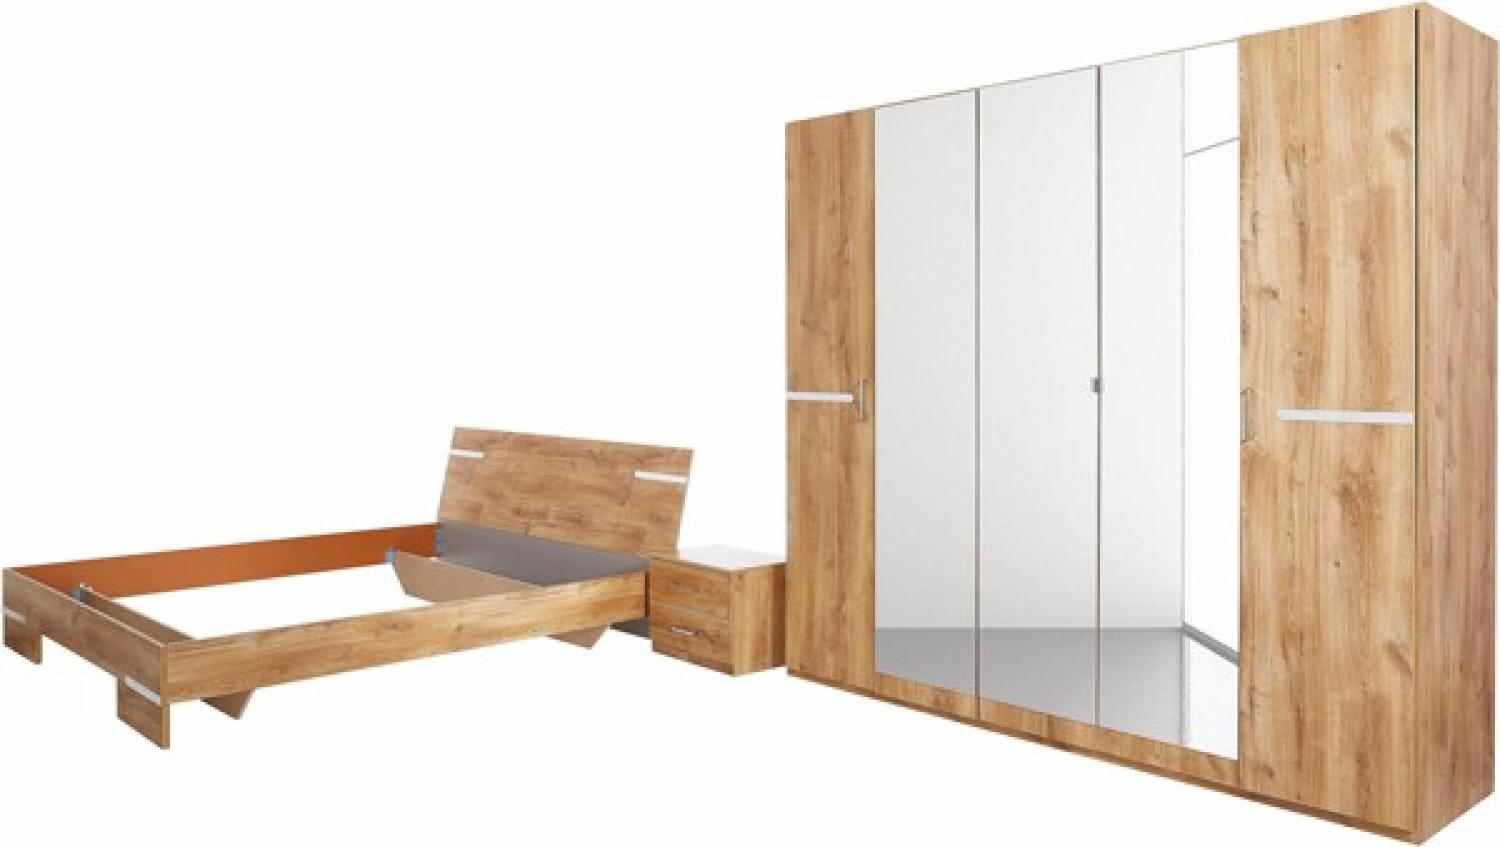 Wimex Schlafzimmer komplett Anna Spiegel Bett 180x200cm 4-teilig plankeneiche Bild 1